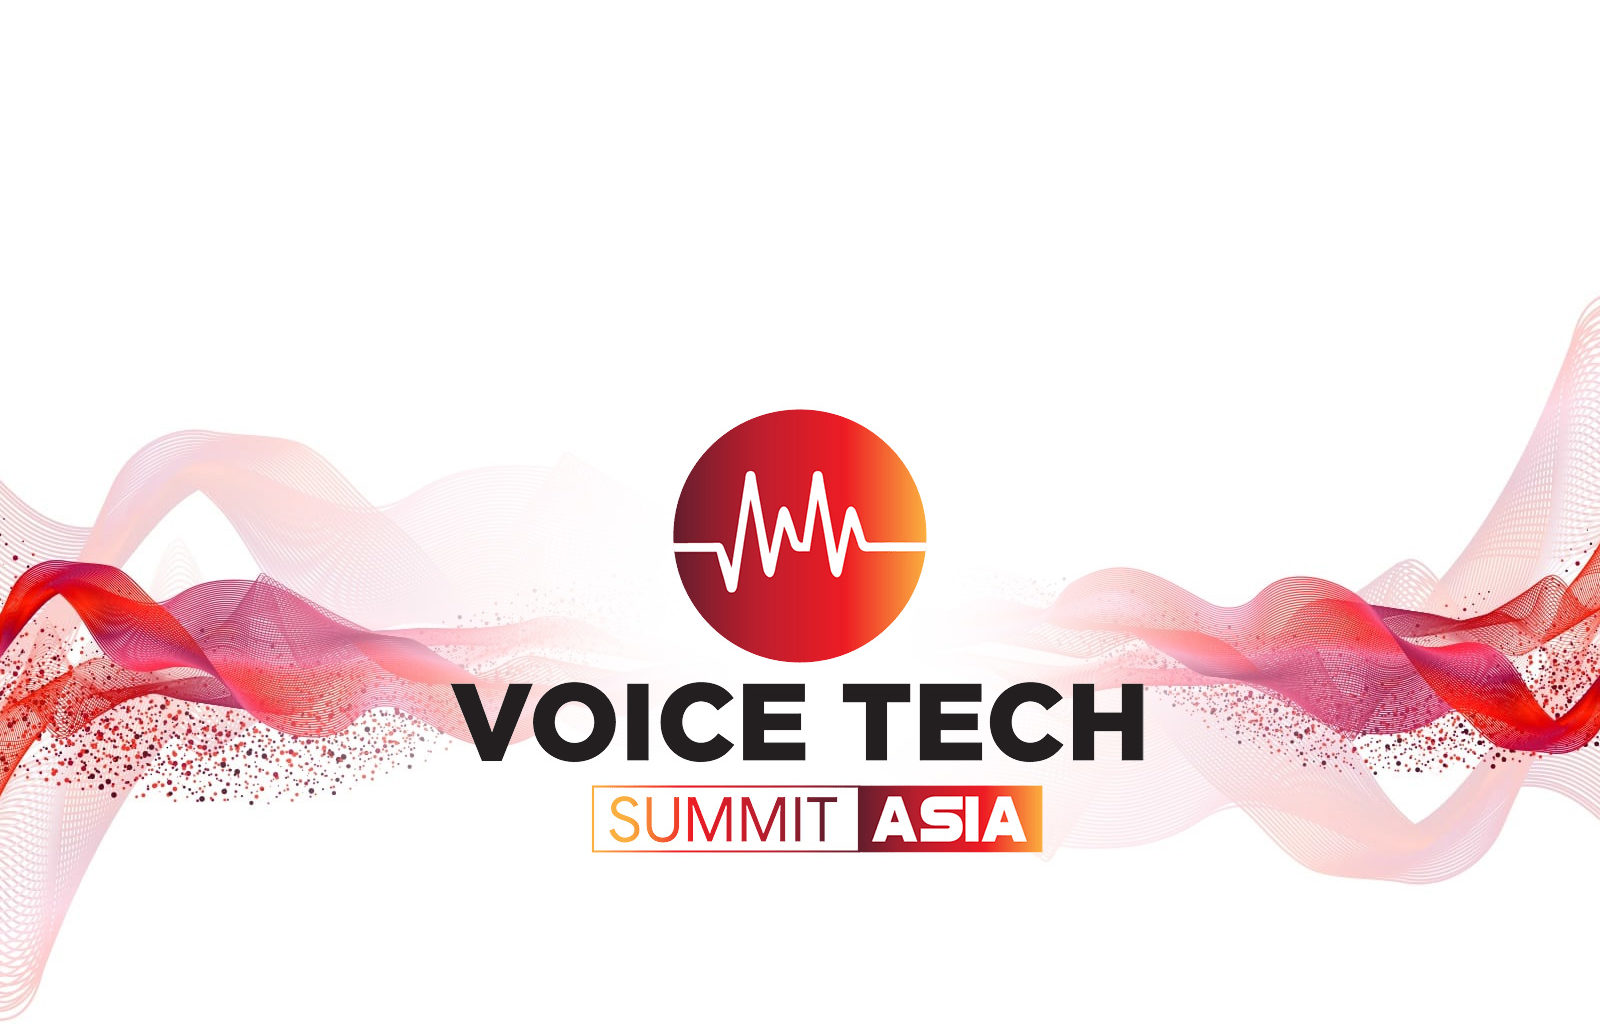 Voice Tech Summit Asia